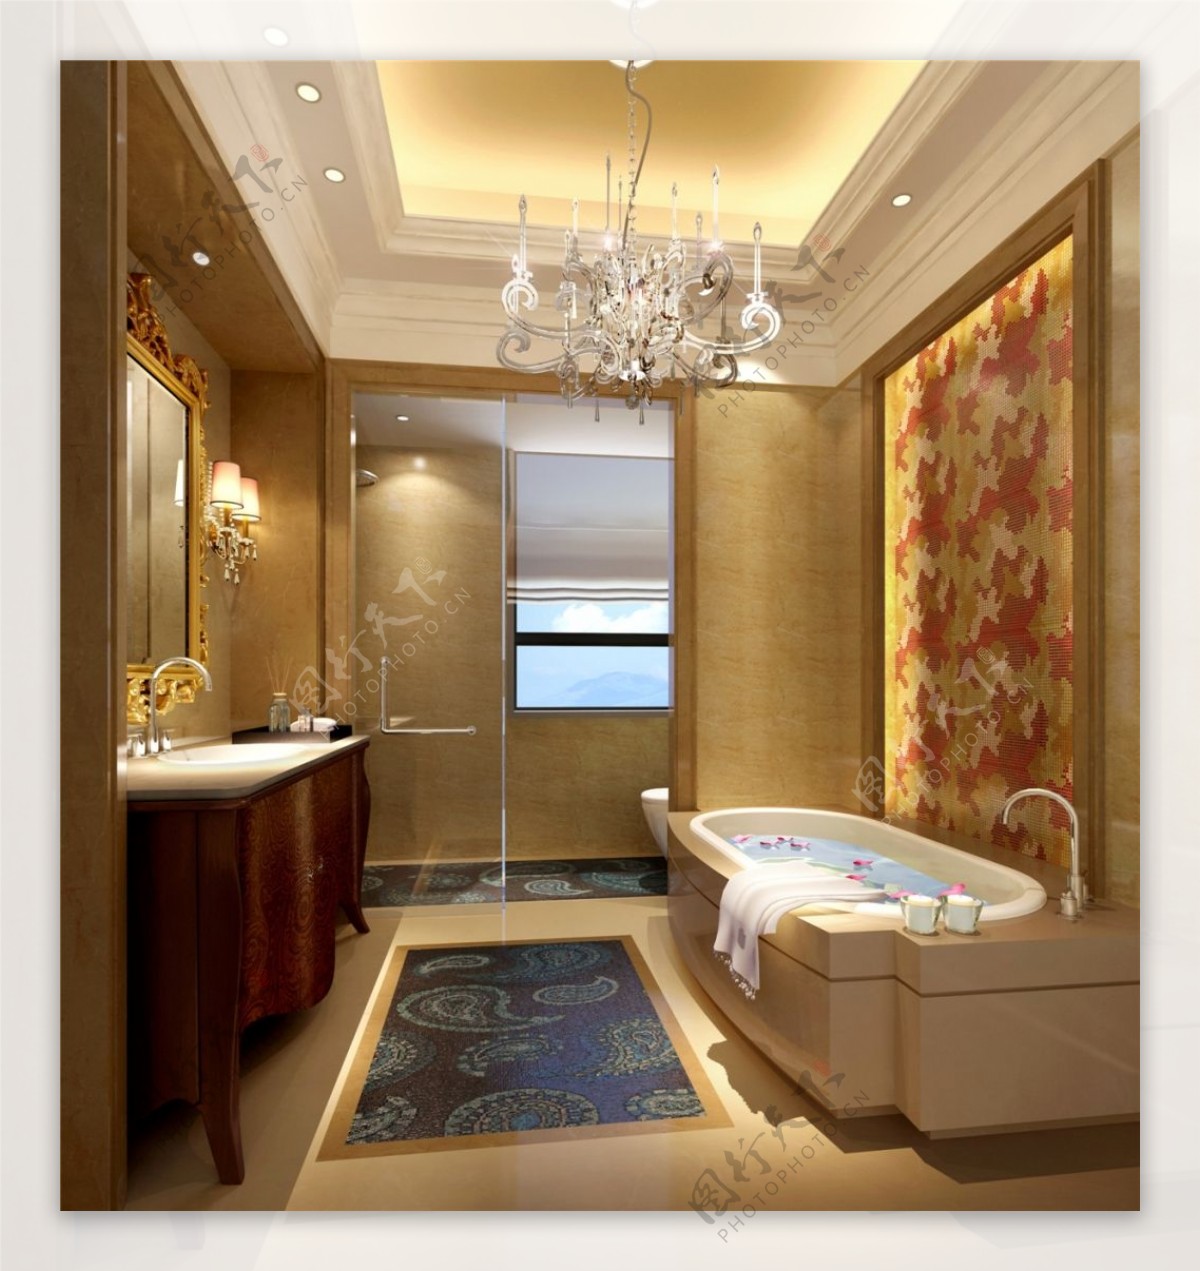 奢华现代风格浴室吊顶效果图设计